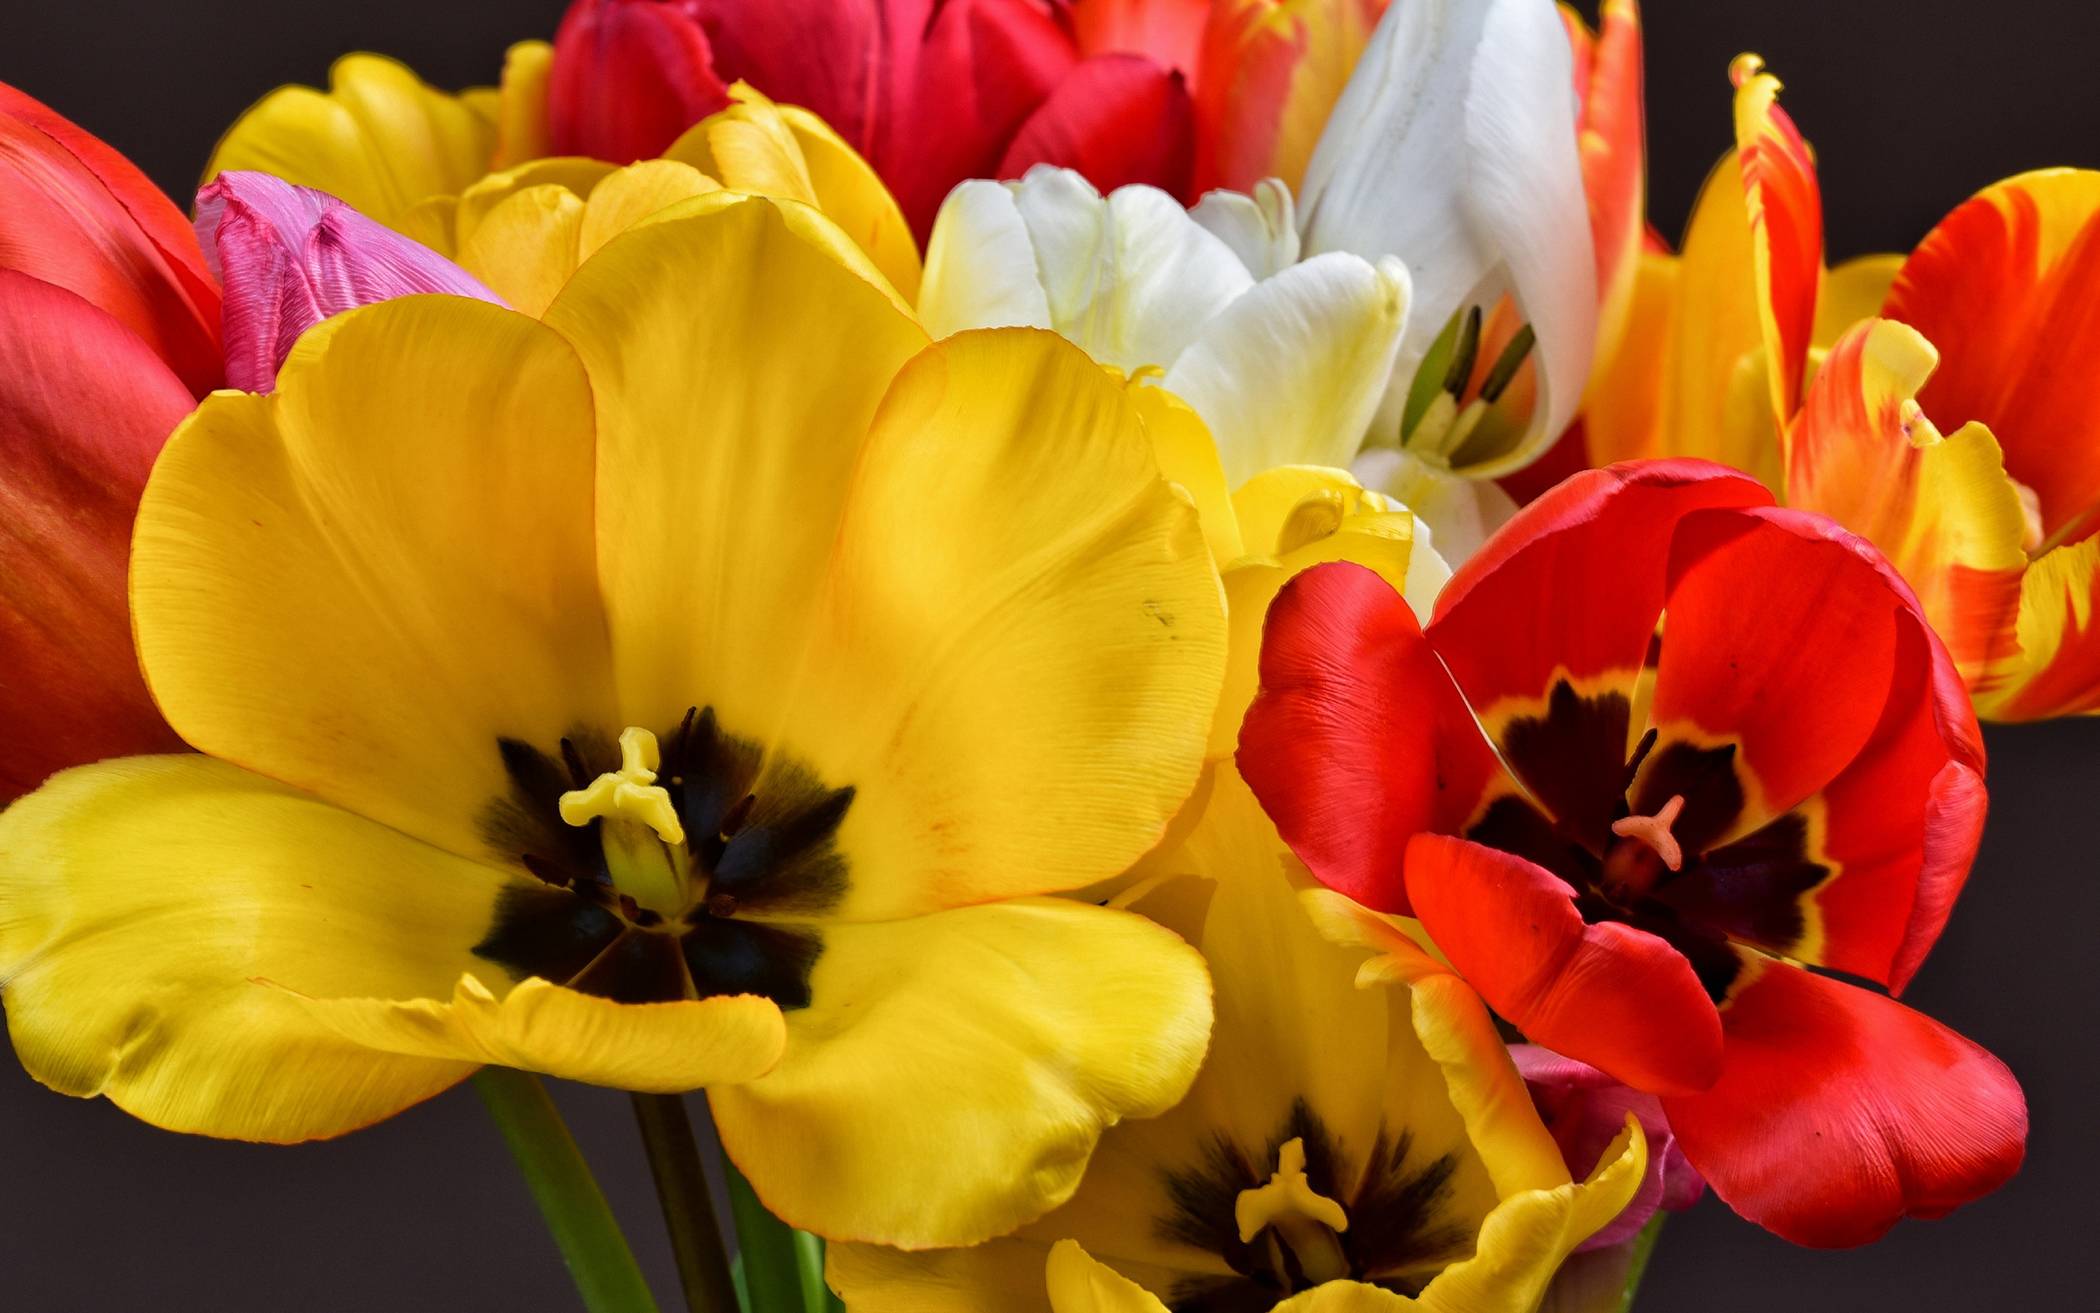 Auch Tulpen, die typischen Frühlingsblumen, gibt